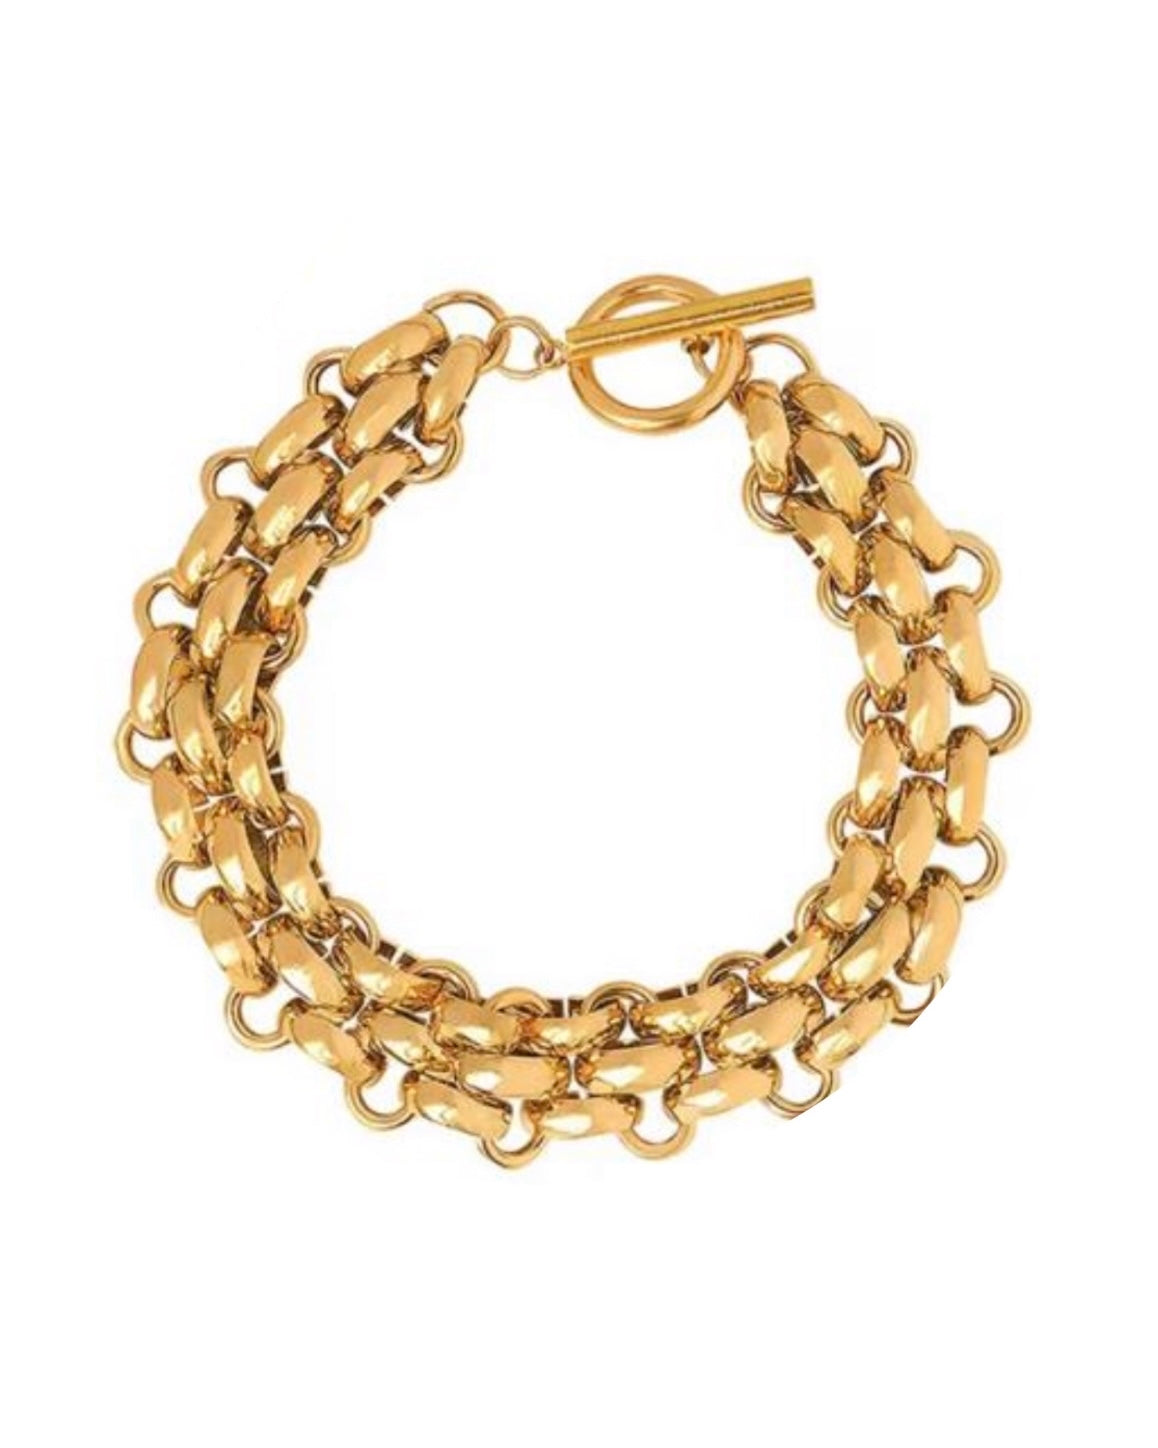 Preorder - Antique Gold Bracelet